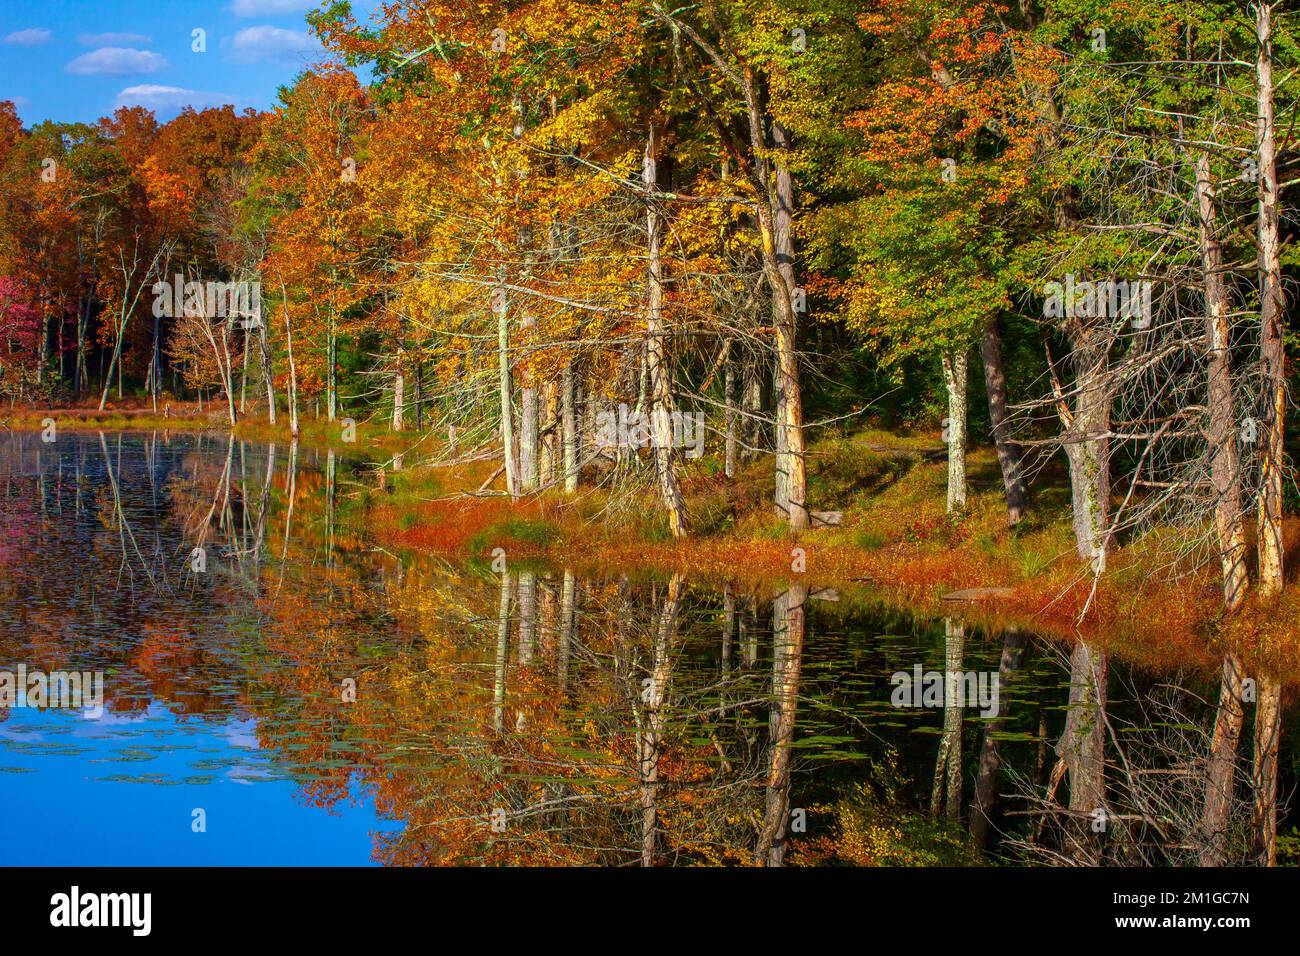 Egypt Mills Pond en automne dans le Delaware Water Gap National Recreation Area, Pennsylvanie Banque D'Images